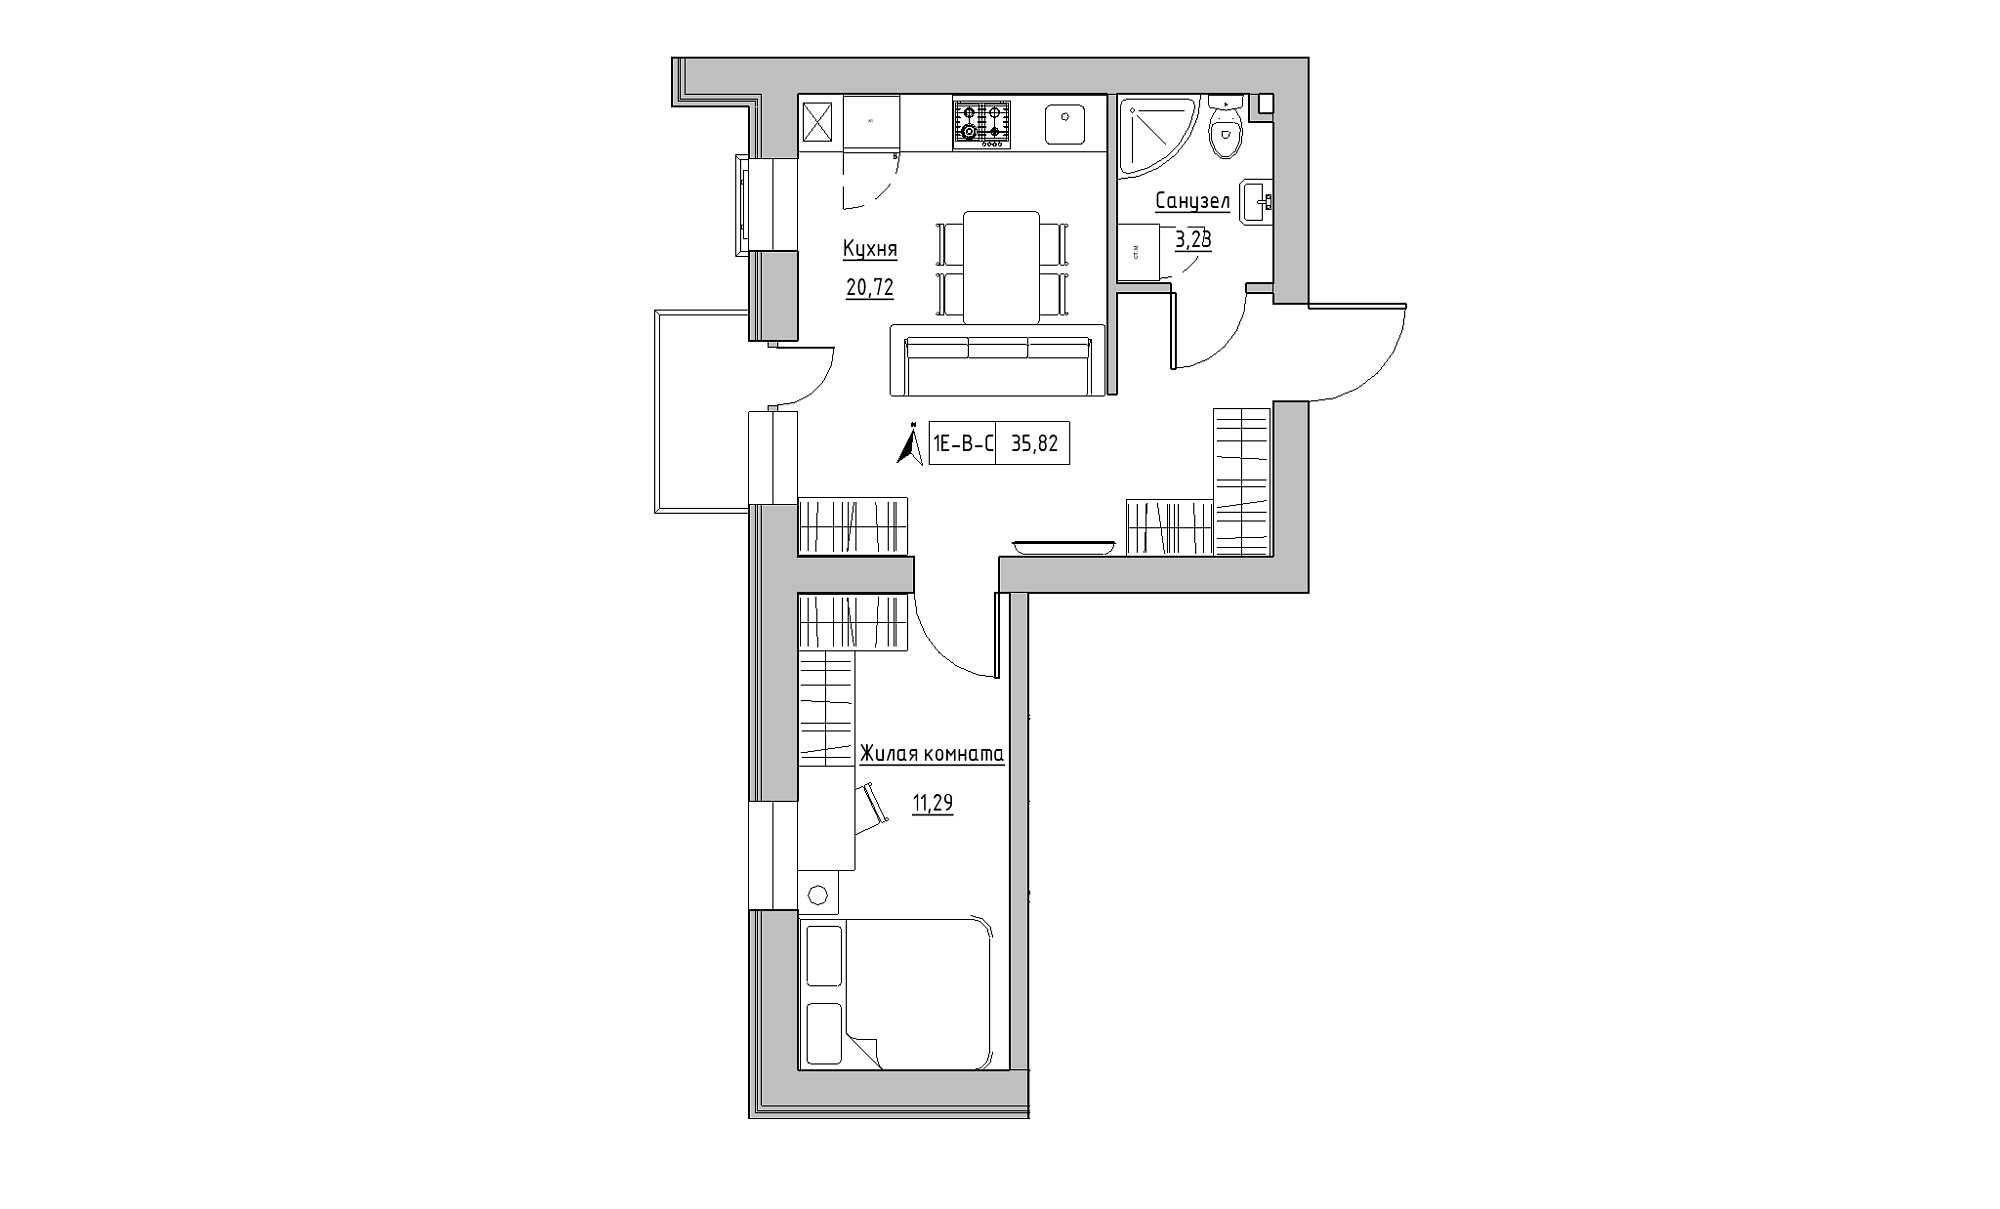 Планировка 1-к квартира площей 35.82м2, KS-016-02/0009.